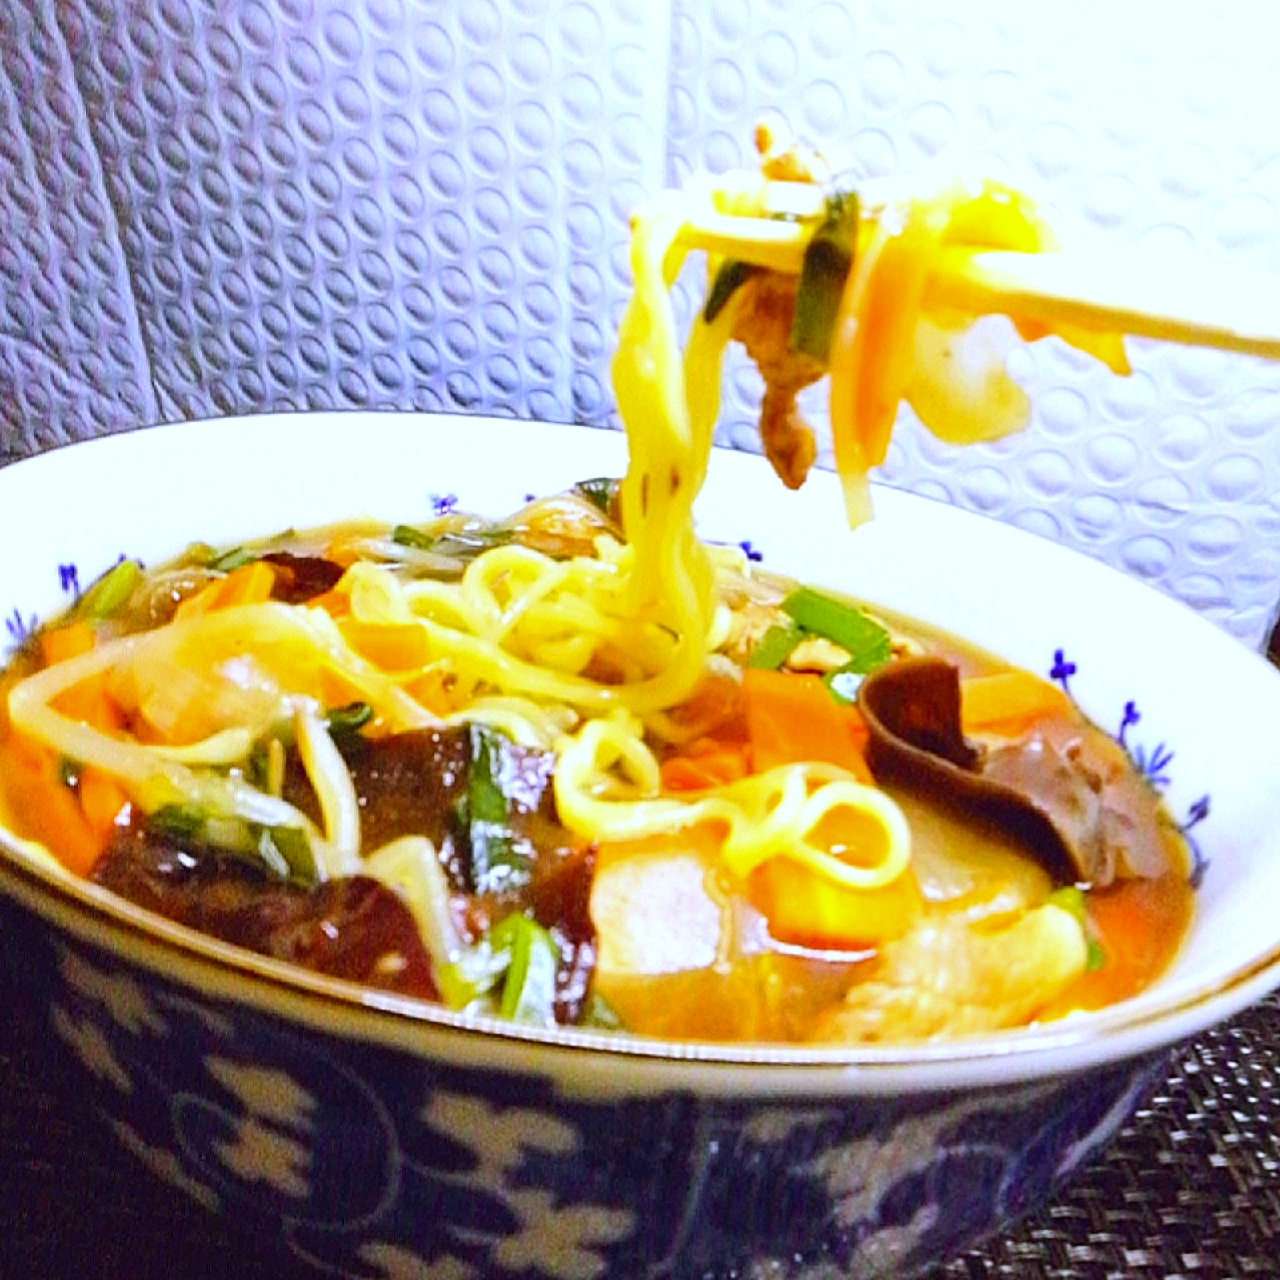 由美さんの料理 朝ラー！横浜サンマーメン🍜

めっちゃ美味しいサンマーメン甘酸っぱいスープ(◠‿・)—☆